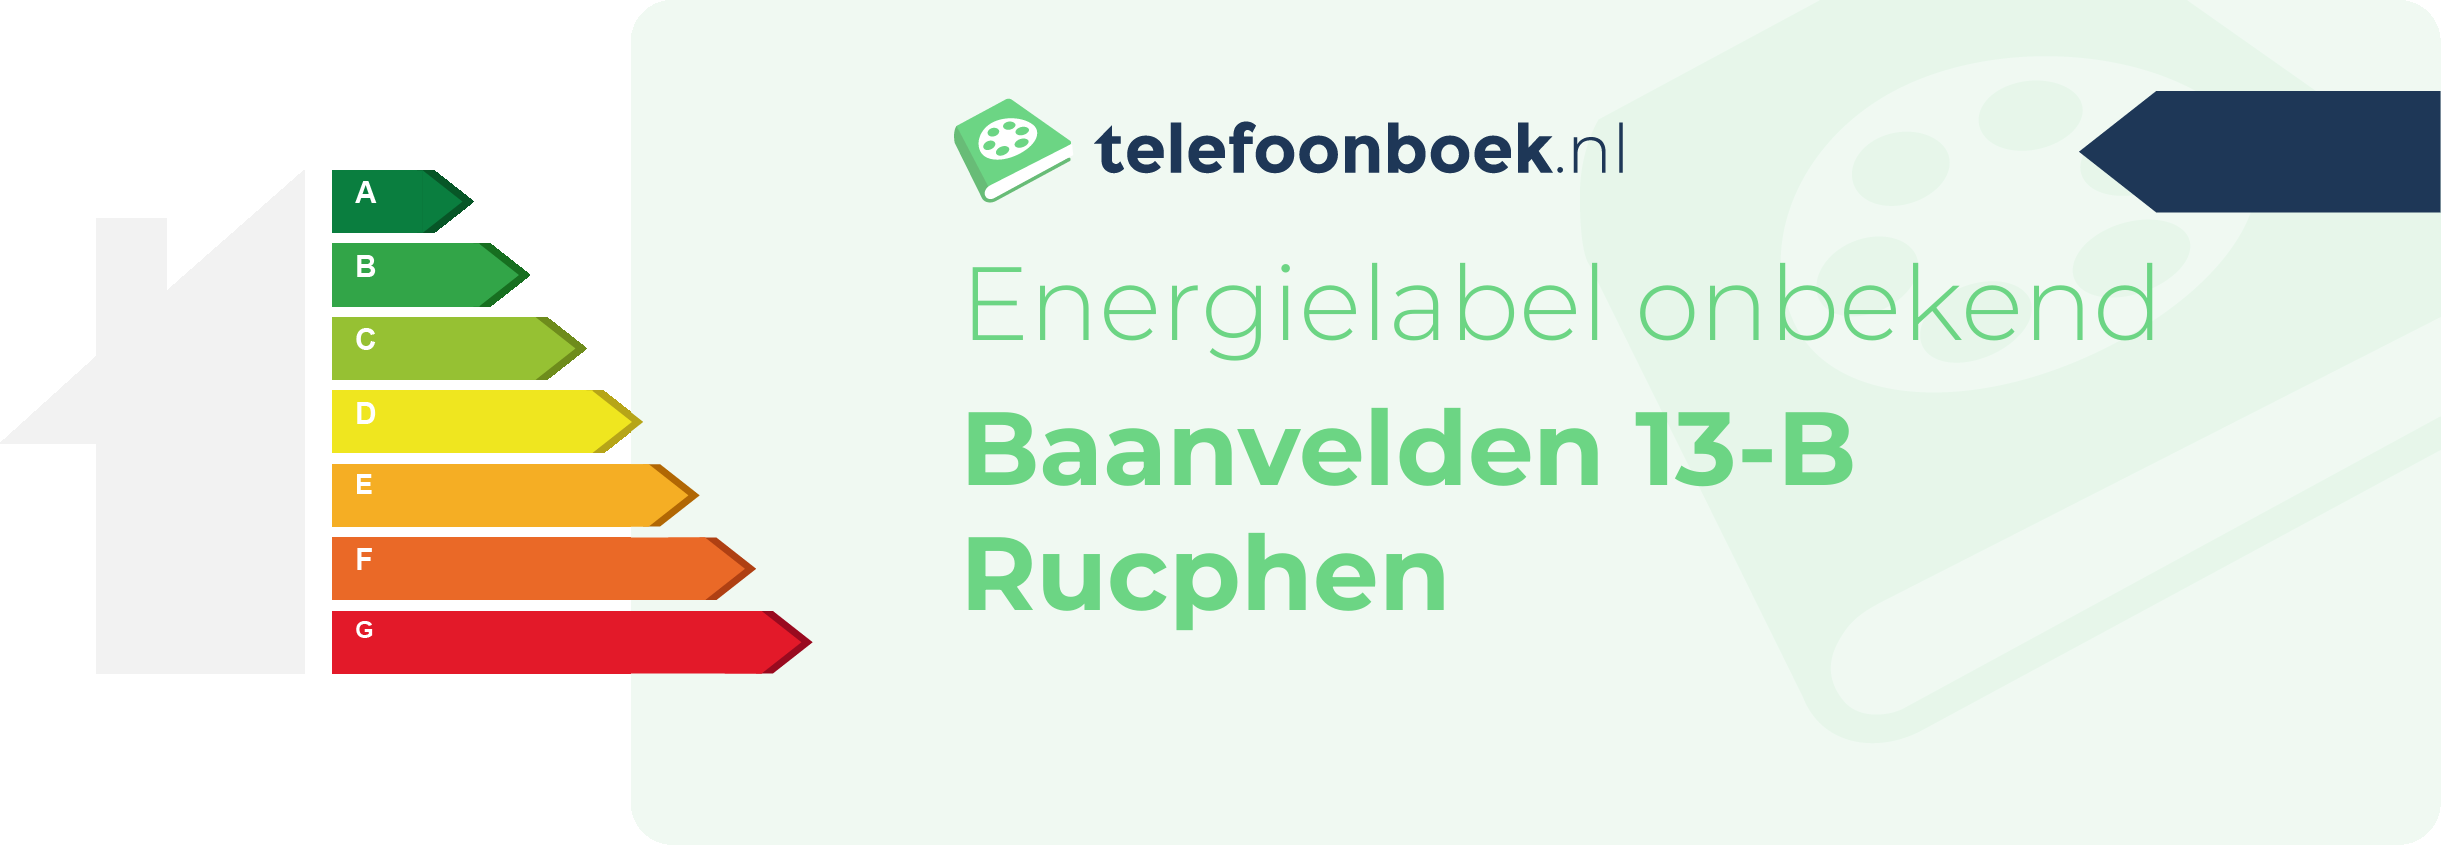 Energielabel Baanvelden 13-B Rucphen